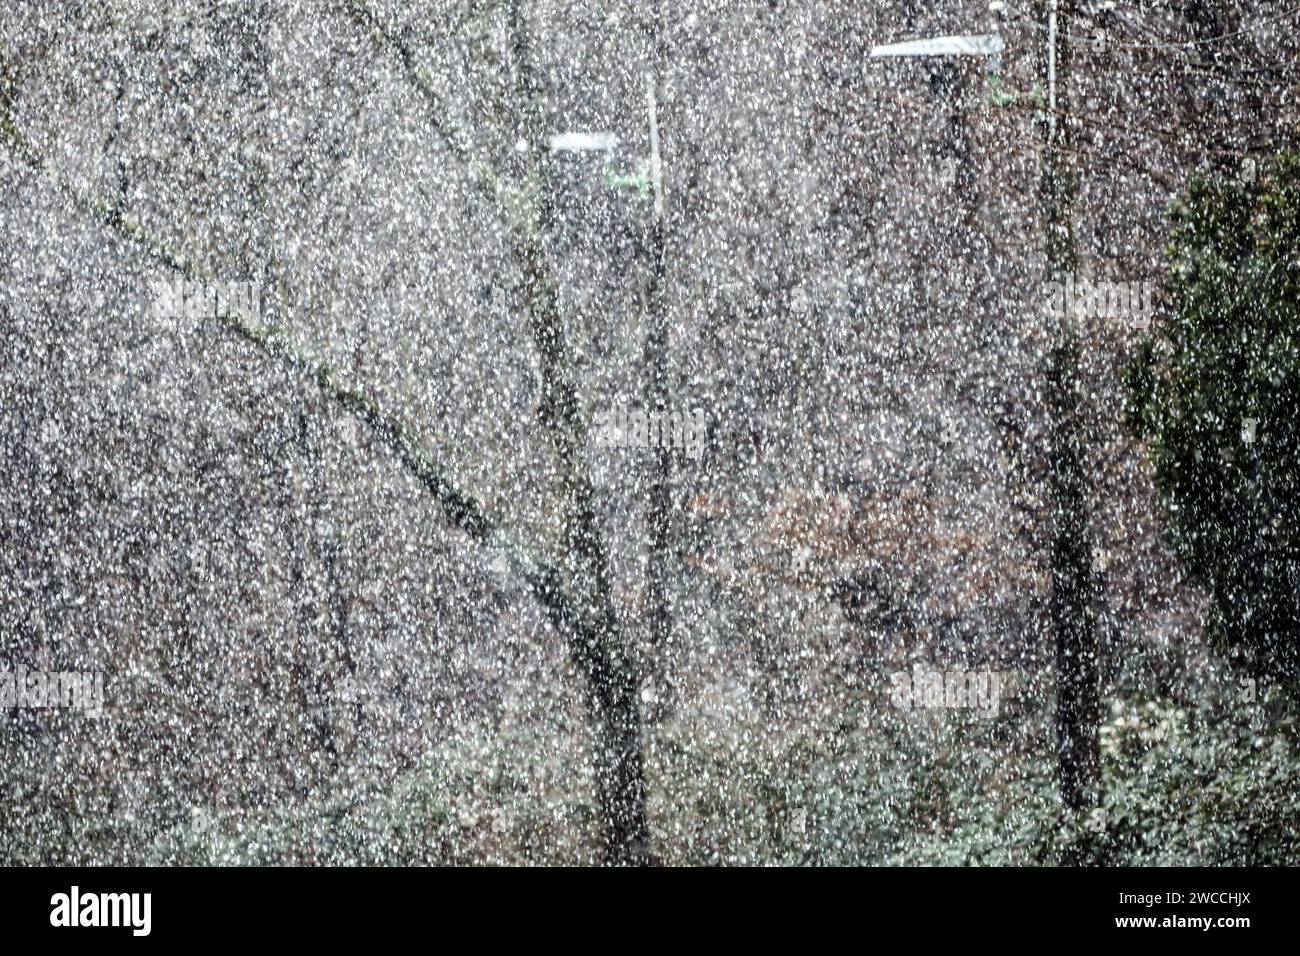 Schneefall a tiefen Lagen Deutschlands in seltenen Fällen erreichen Schneefälle auch das Tiefland im Ruhrtal bei 54 Meter über dem Meeresspiegel und bedecken die Vegetation für zumeist kurze Zeiträume. Essen Nordrhein-Westfalen Deutschland Ruhrtal Foto Stock